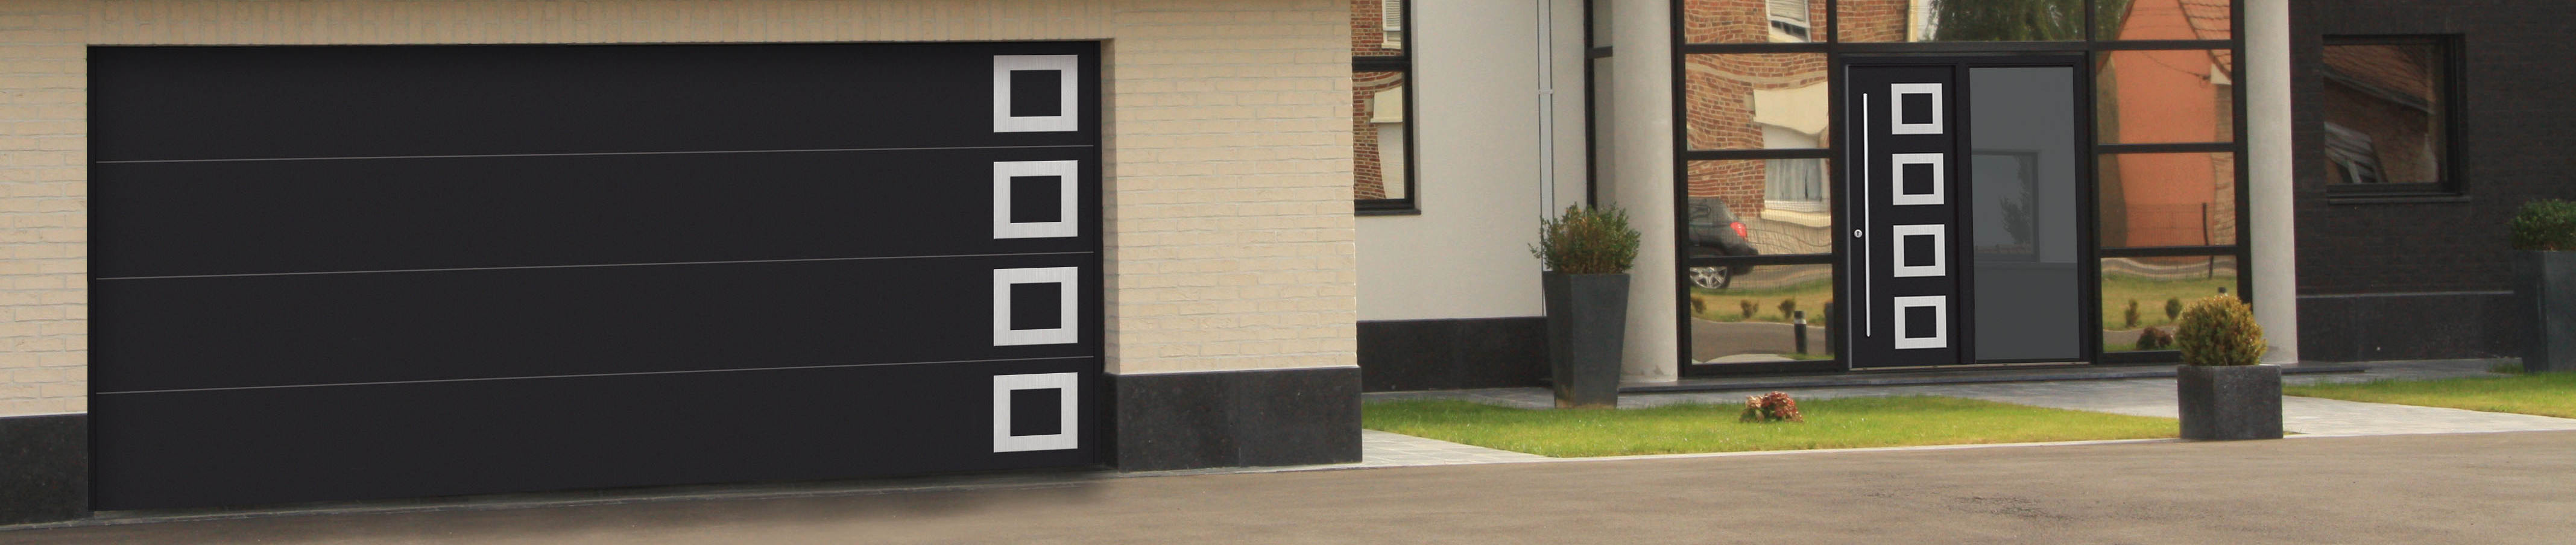 Porte de garage moderne sur maison contemporaine, couleur ral 7016